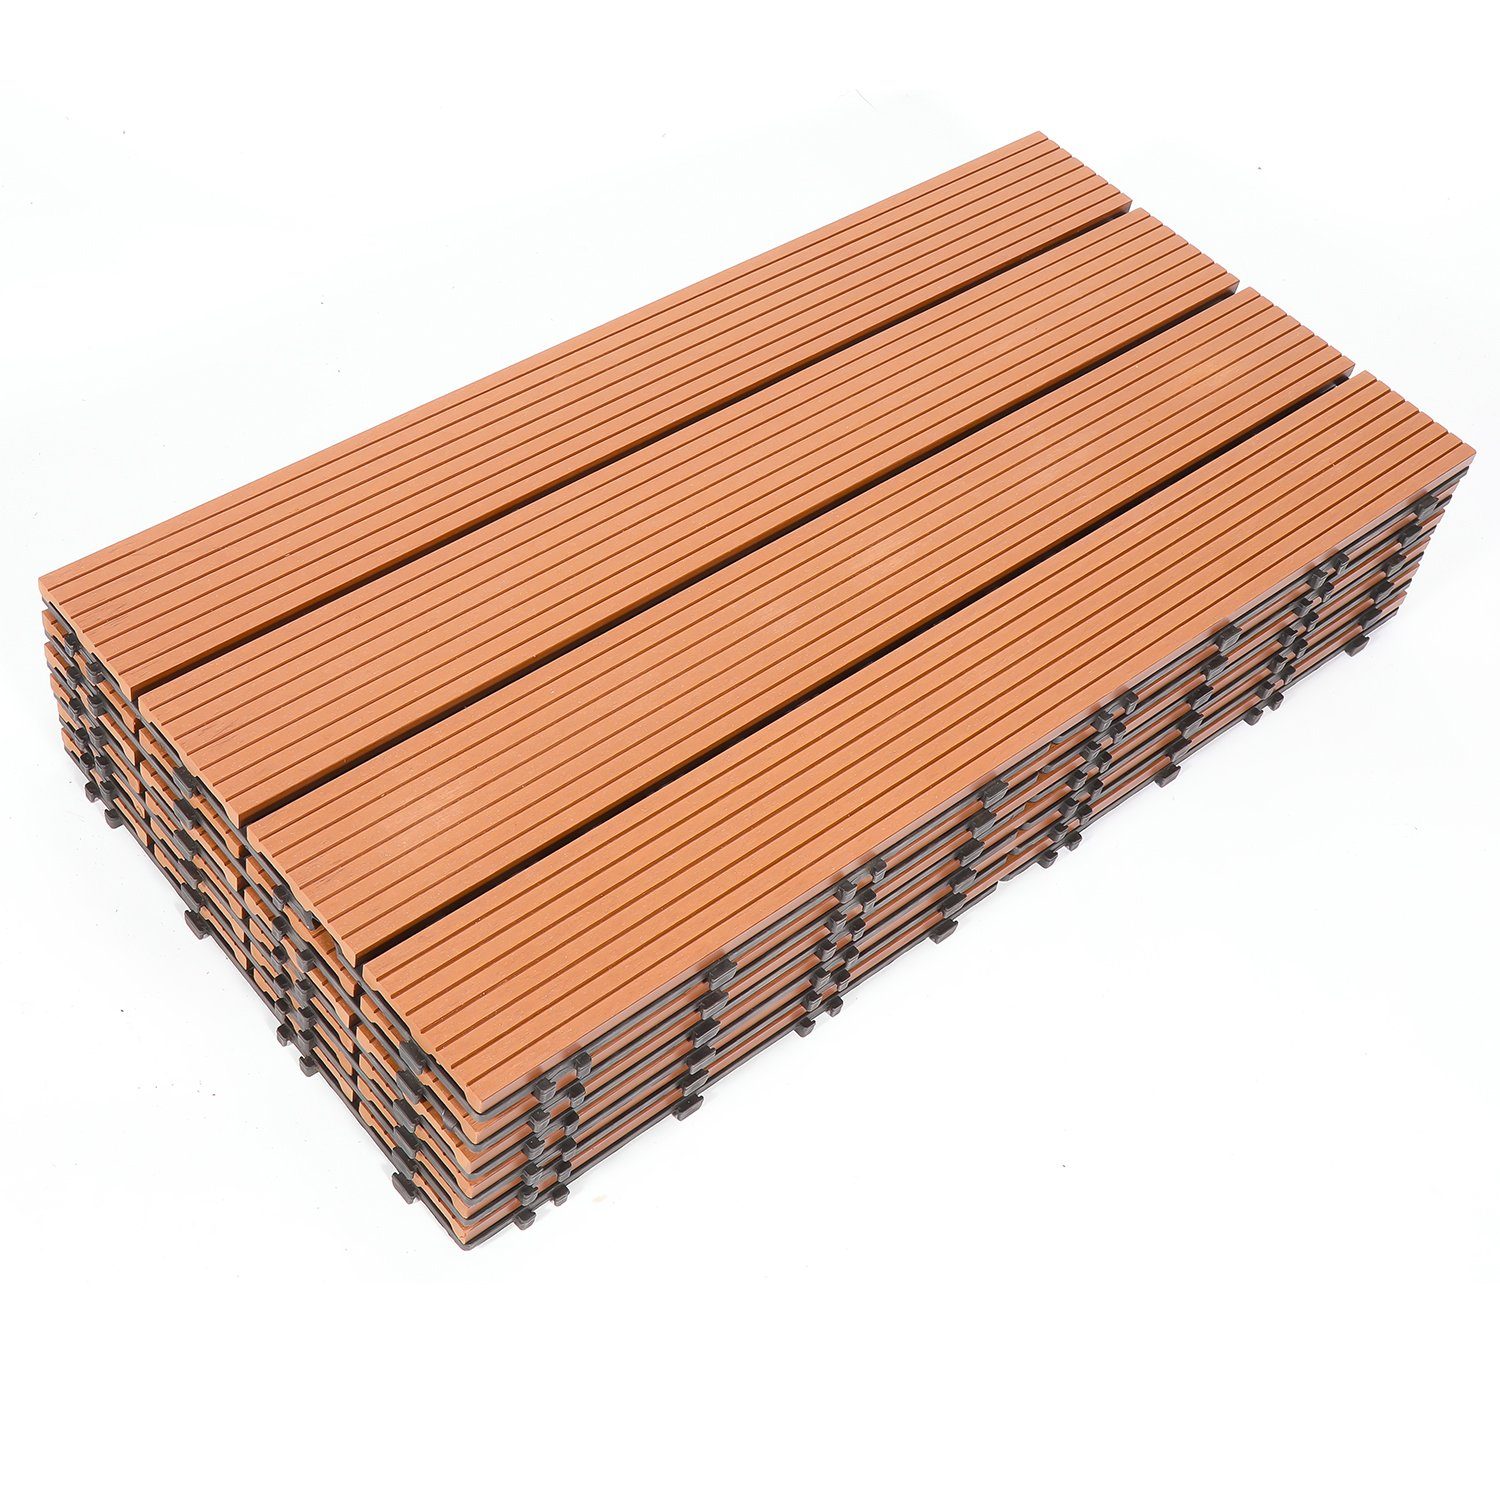 Yakimz Holzfliesen 12 Terrassendielen Balkon cm mit klicksystem Terrassen 60x30 Stück für Holzfliesen, WPC und Fliesen 2m²